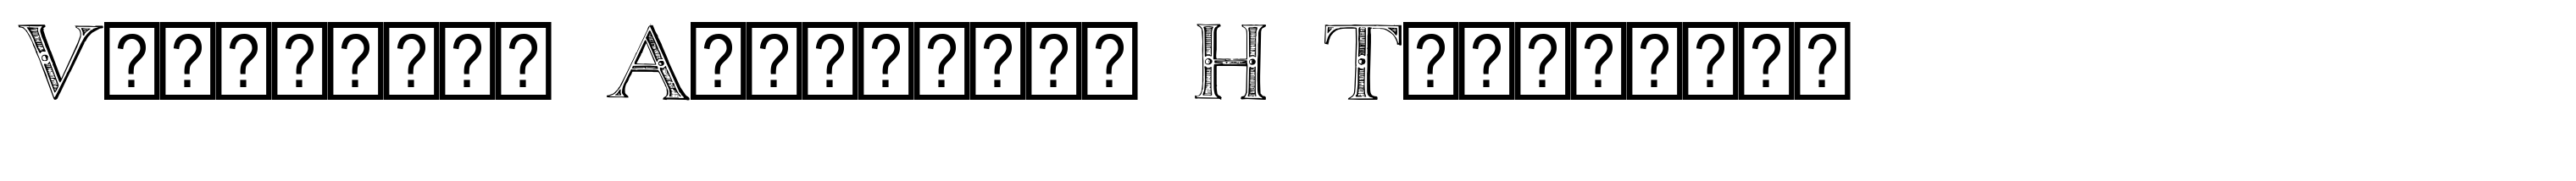 Victorian Alphabets H Titivilus